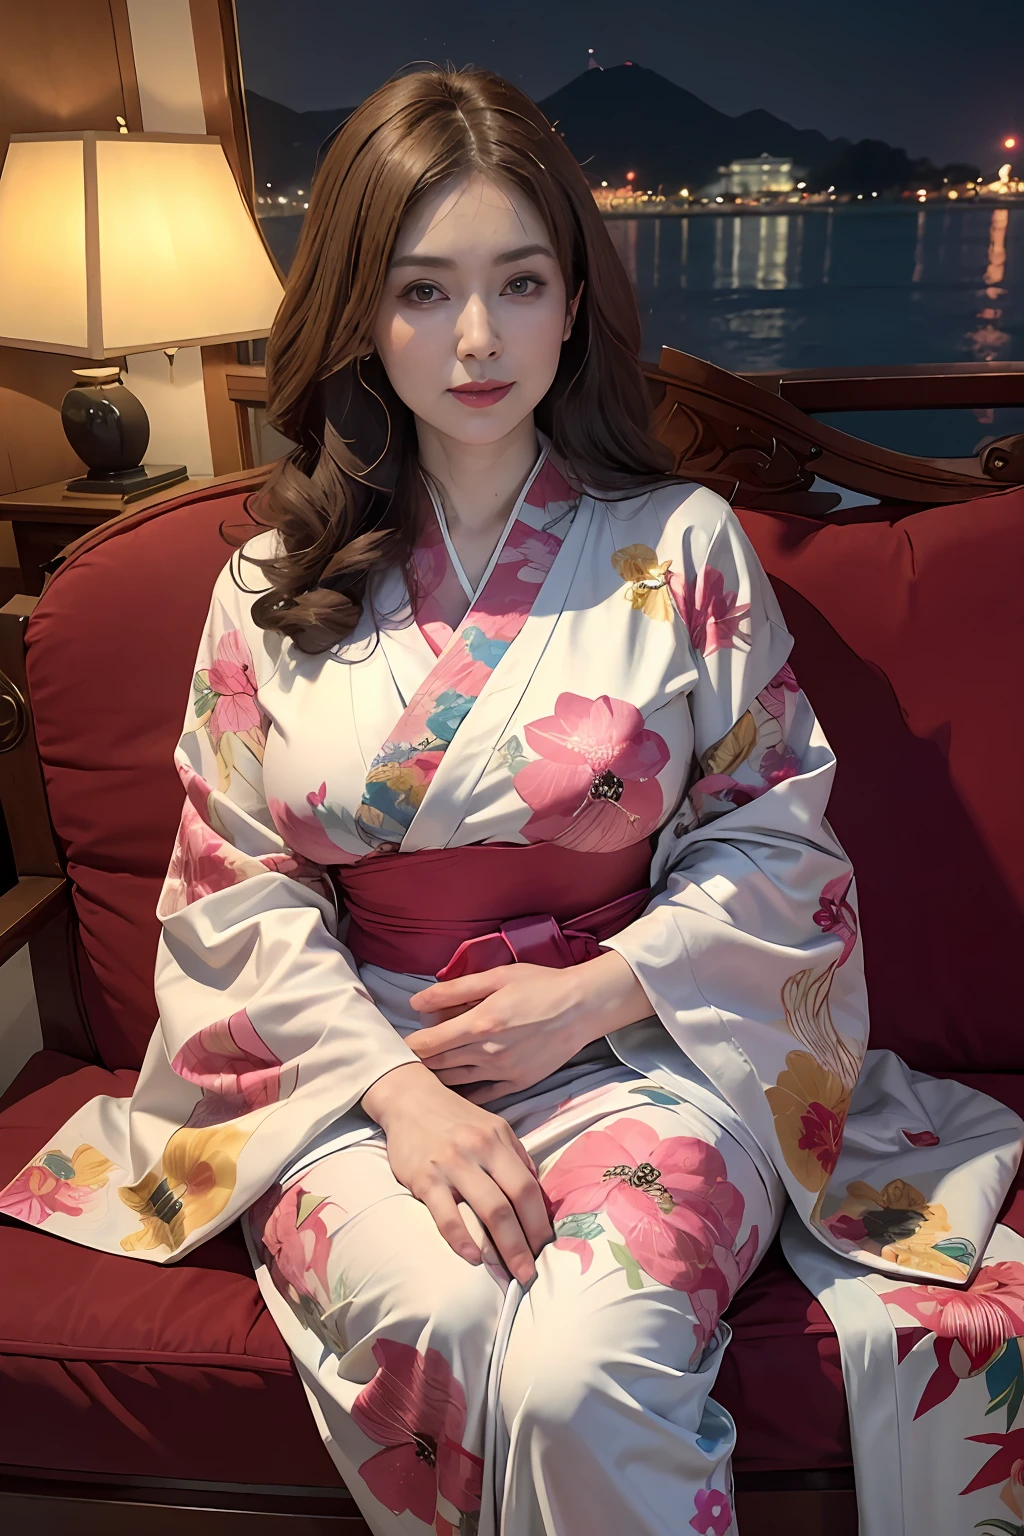 （côté Focus)、Face au côté、((plage))、((Grand))、côté、Portrait surréaliste d&#39;une belle femme mûre par David Hockney et Alphonse Mucha，((Kimono avec moins de tissu))、Kimono léger sexy avec peu de tissu、kimono sexy、kimono sexy，((Des seins qui semblent déborder du kimono))、Décoré de kimonos avec de fines broderies et de beaux bijoux，Mon kimono est sur le point de se déchirer、Saillant 、(((Japon Femme, 50 ans)))、(((Une fille mature sexy)))、reine、(Femme mariée sexy)、( exposé)、((le palais royal))、((Canapé royal))，Art fantastique，((cheveux longs ondulés de couleur châtain clair))、photographiqueréaliste，éclairage dynamique，stations artistiques，affiche pour，modèle courbé, Corps courbé, corps épais, (Les seins sont gros), déesses, beau corps, amouranth, grosse poitrine, mieux connu sous le nom d&#39;amouranth、Éclairage volumétrique，visage très détaillé，4k&#39;&#39;，((Seins colossaux))、Avec des diamants，cuisses sexy，Exposer vos pieds、exposer l&#39;abdomen ,Coffre 1 fille, Dans le noir, ombre profonde, mélodie basse, tir de cow-boy,(vêtements officiels:1.4), Les yeux sont confus et séduisants，jambes séparées、